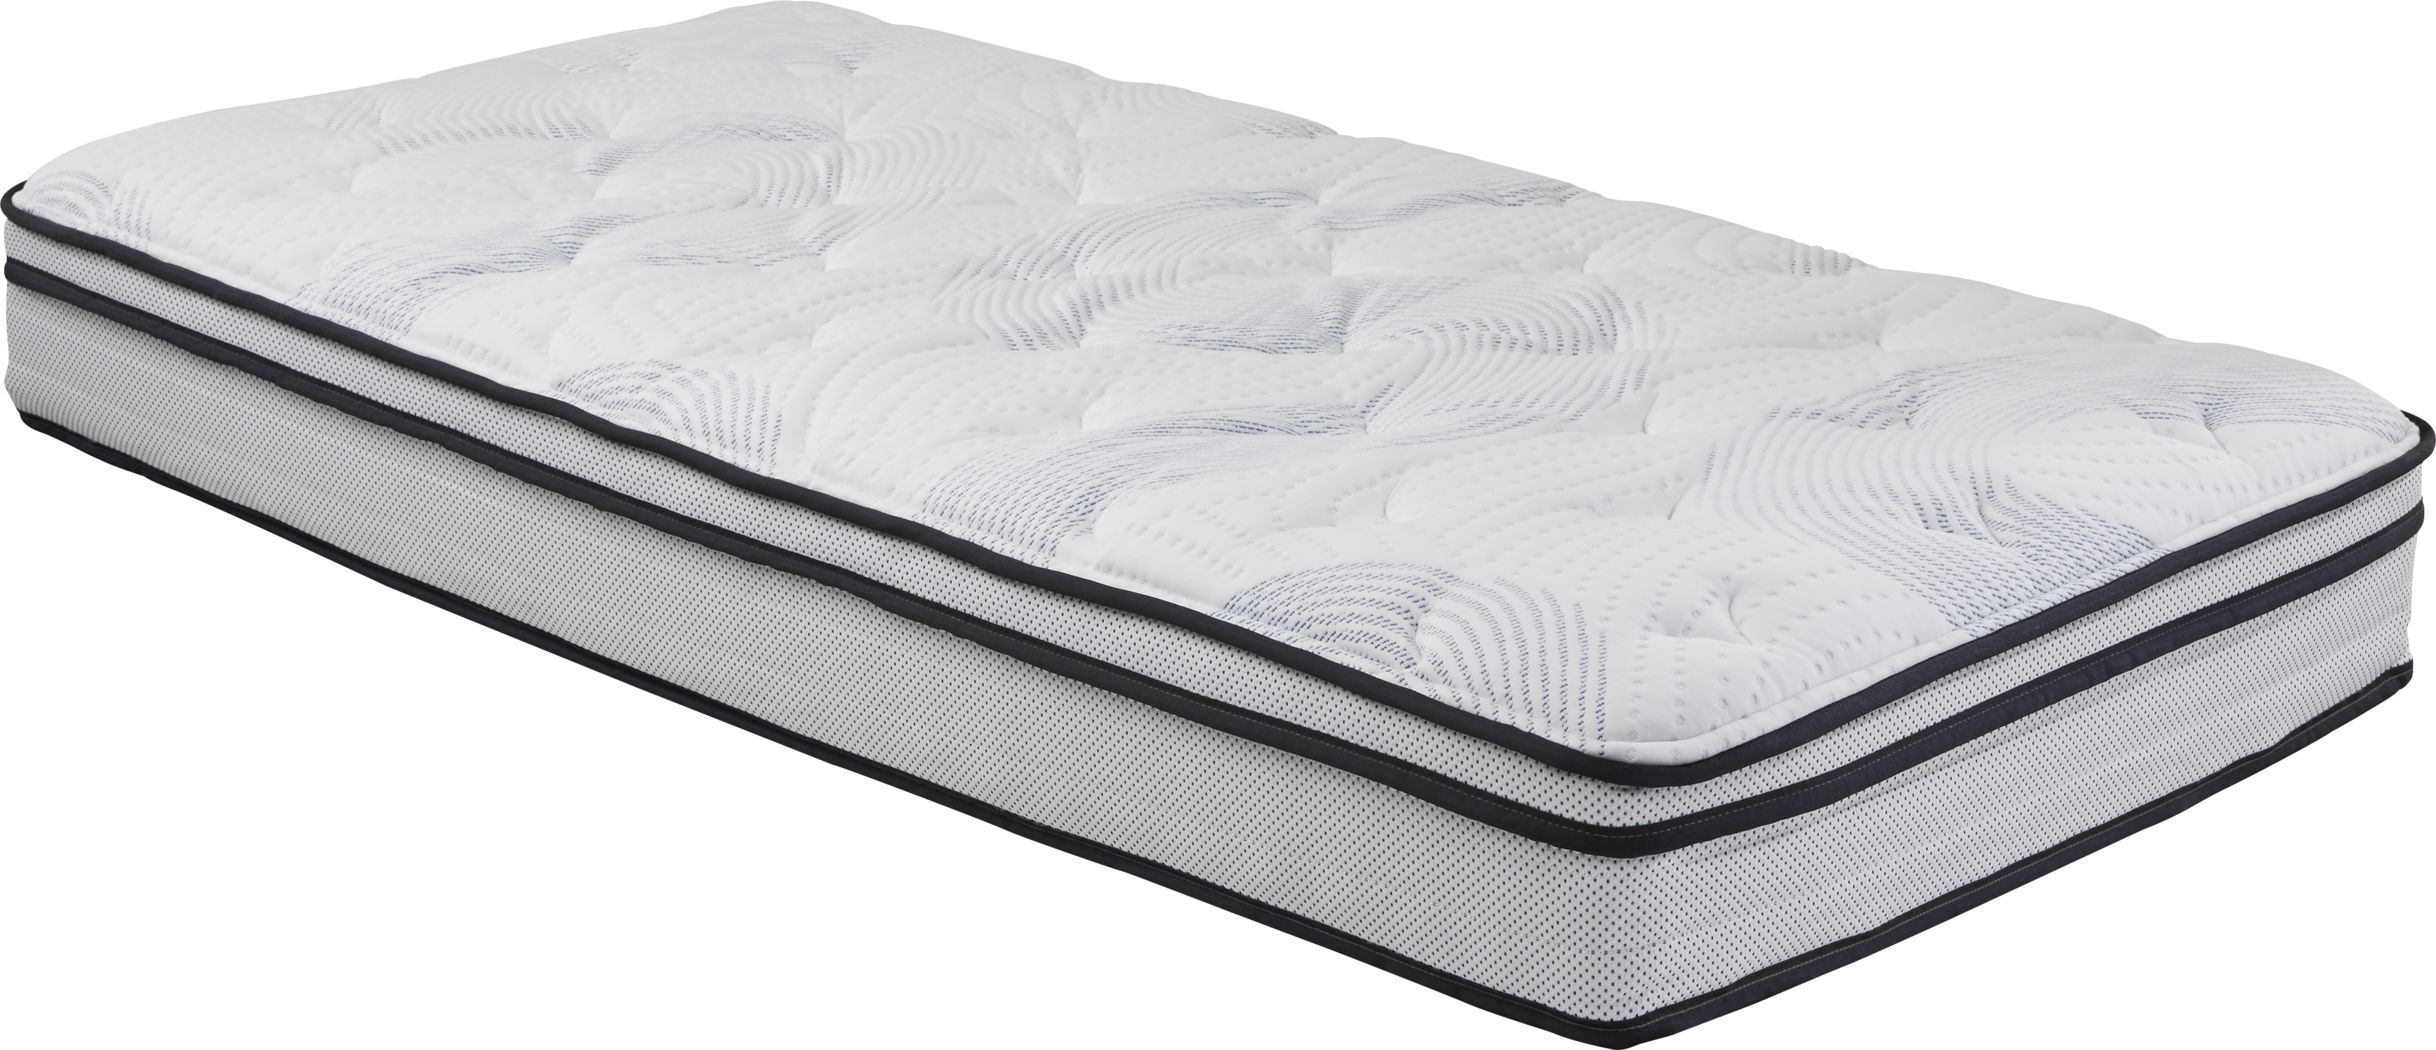 twin size mattress houston